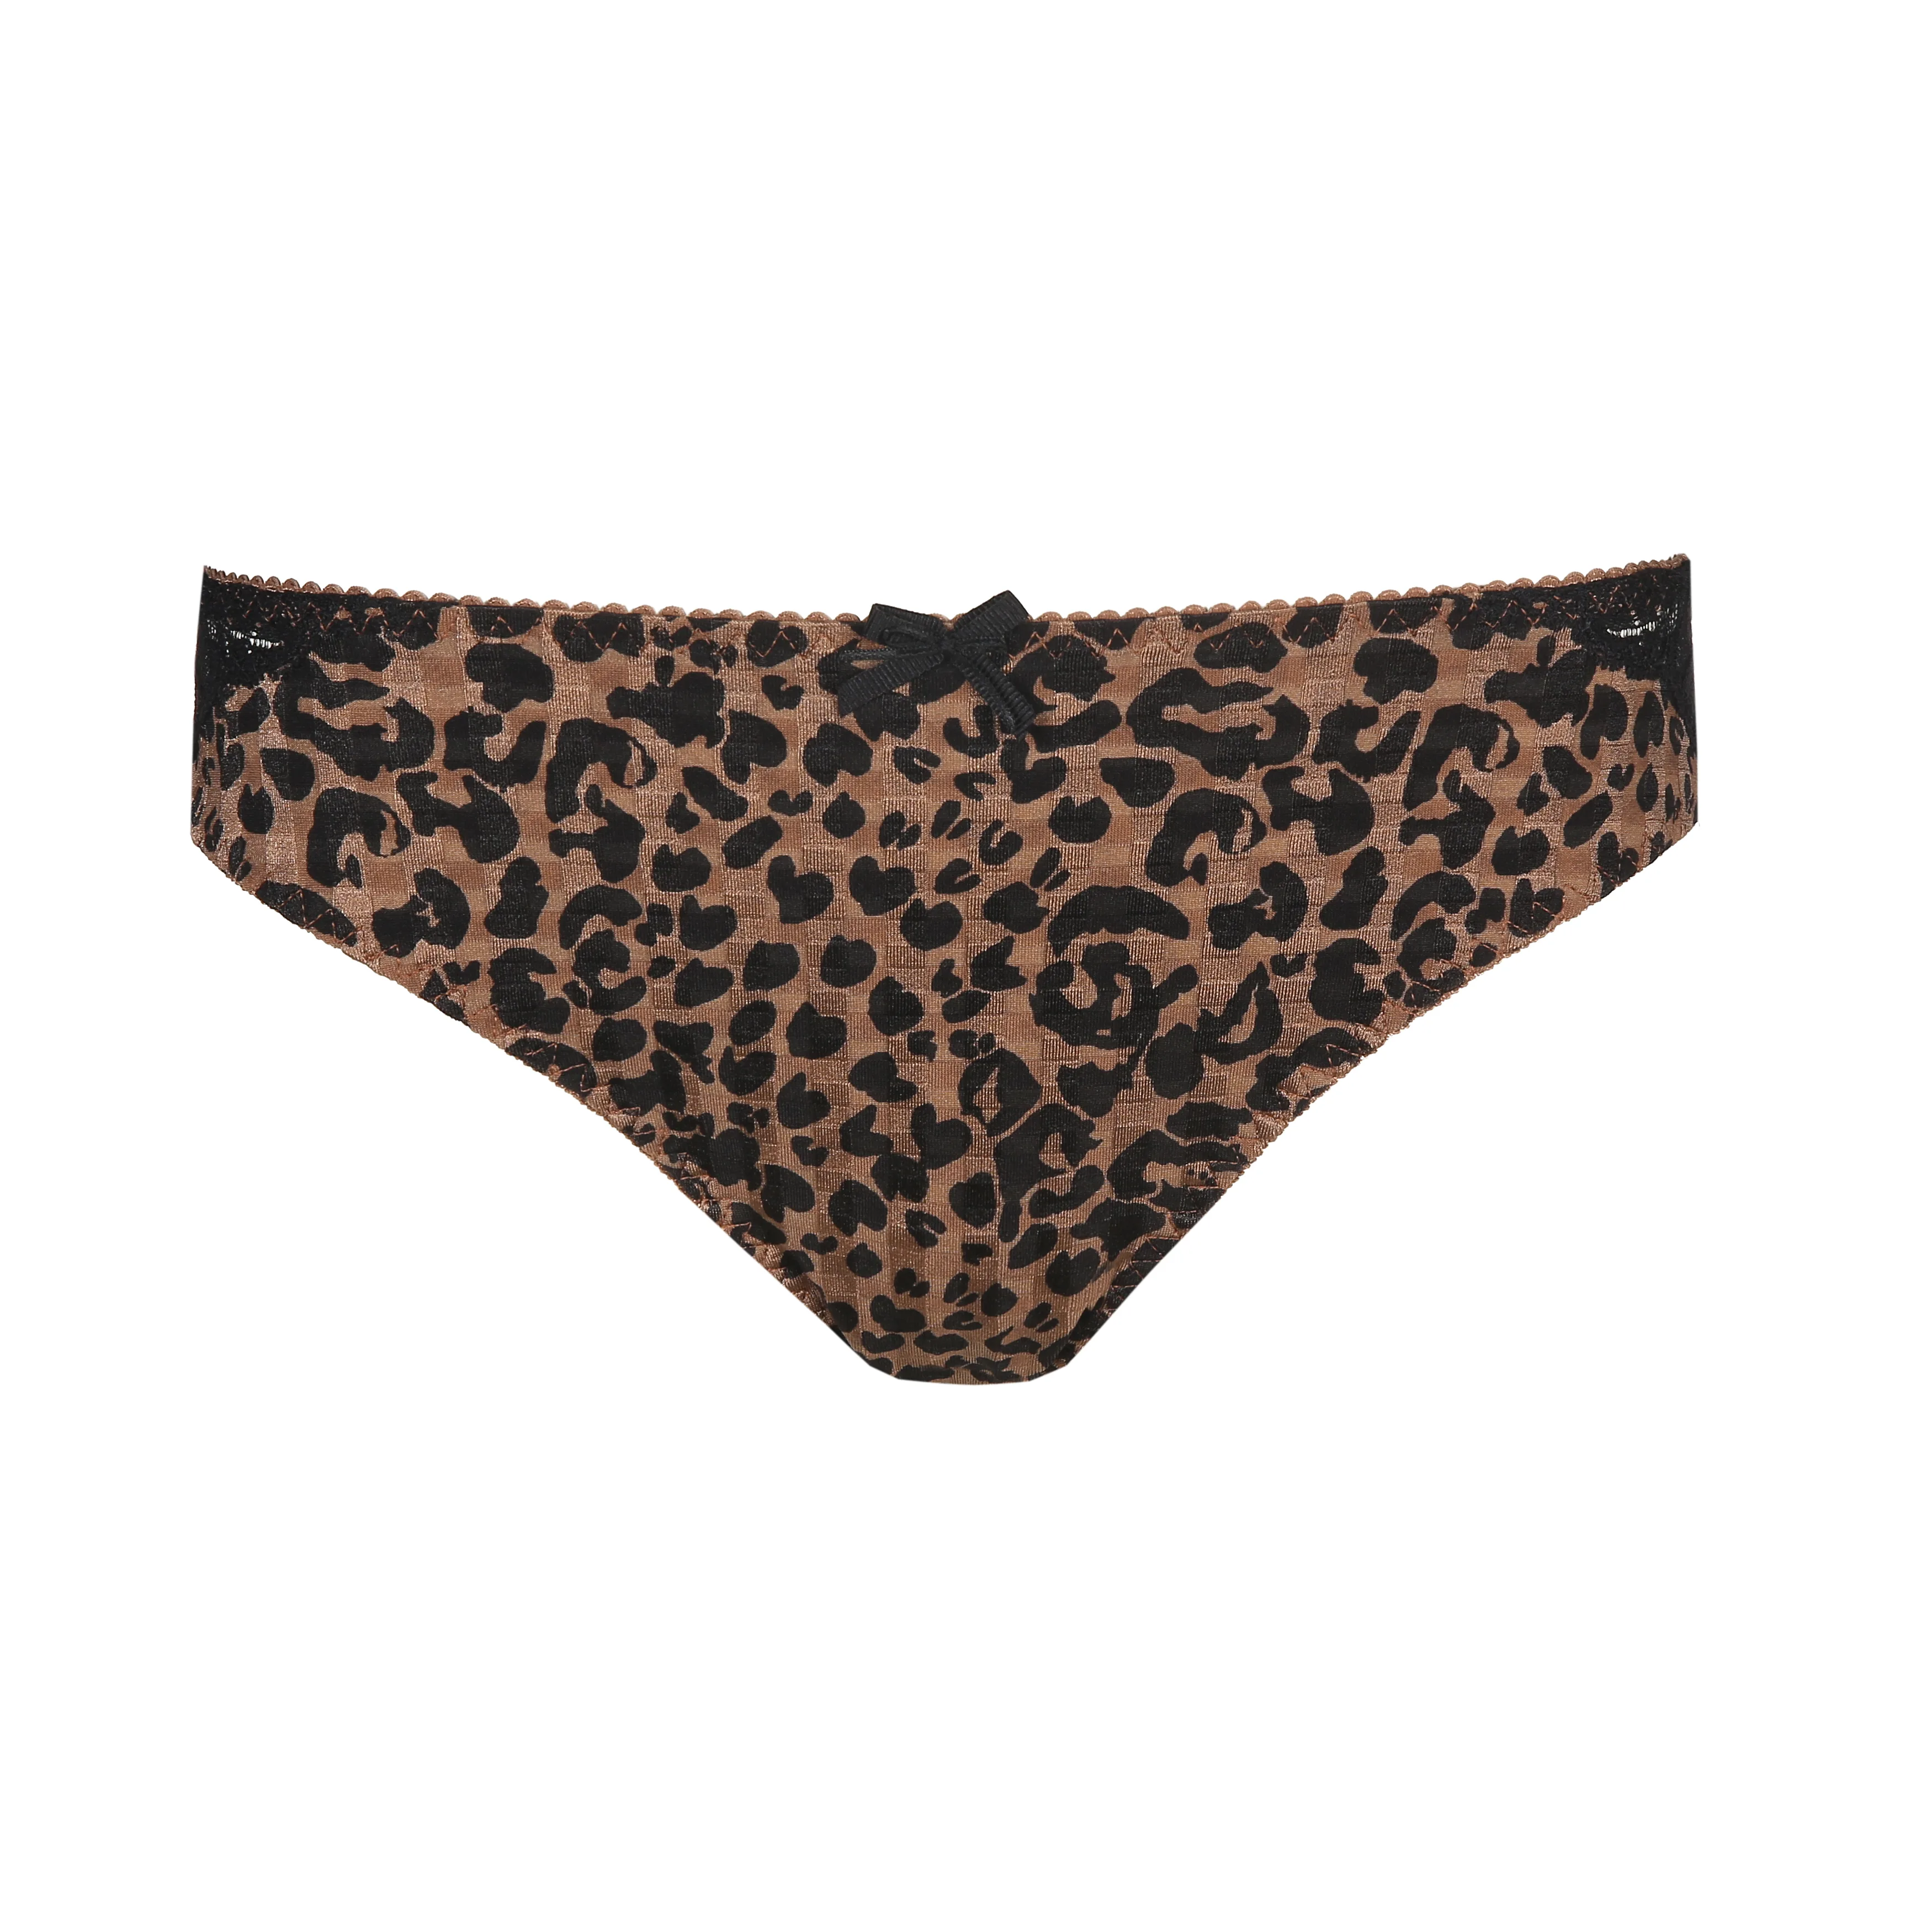 Leopard Print Cheeky Panties